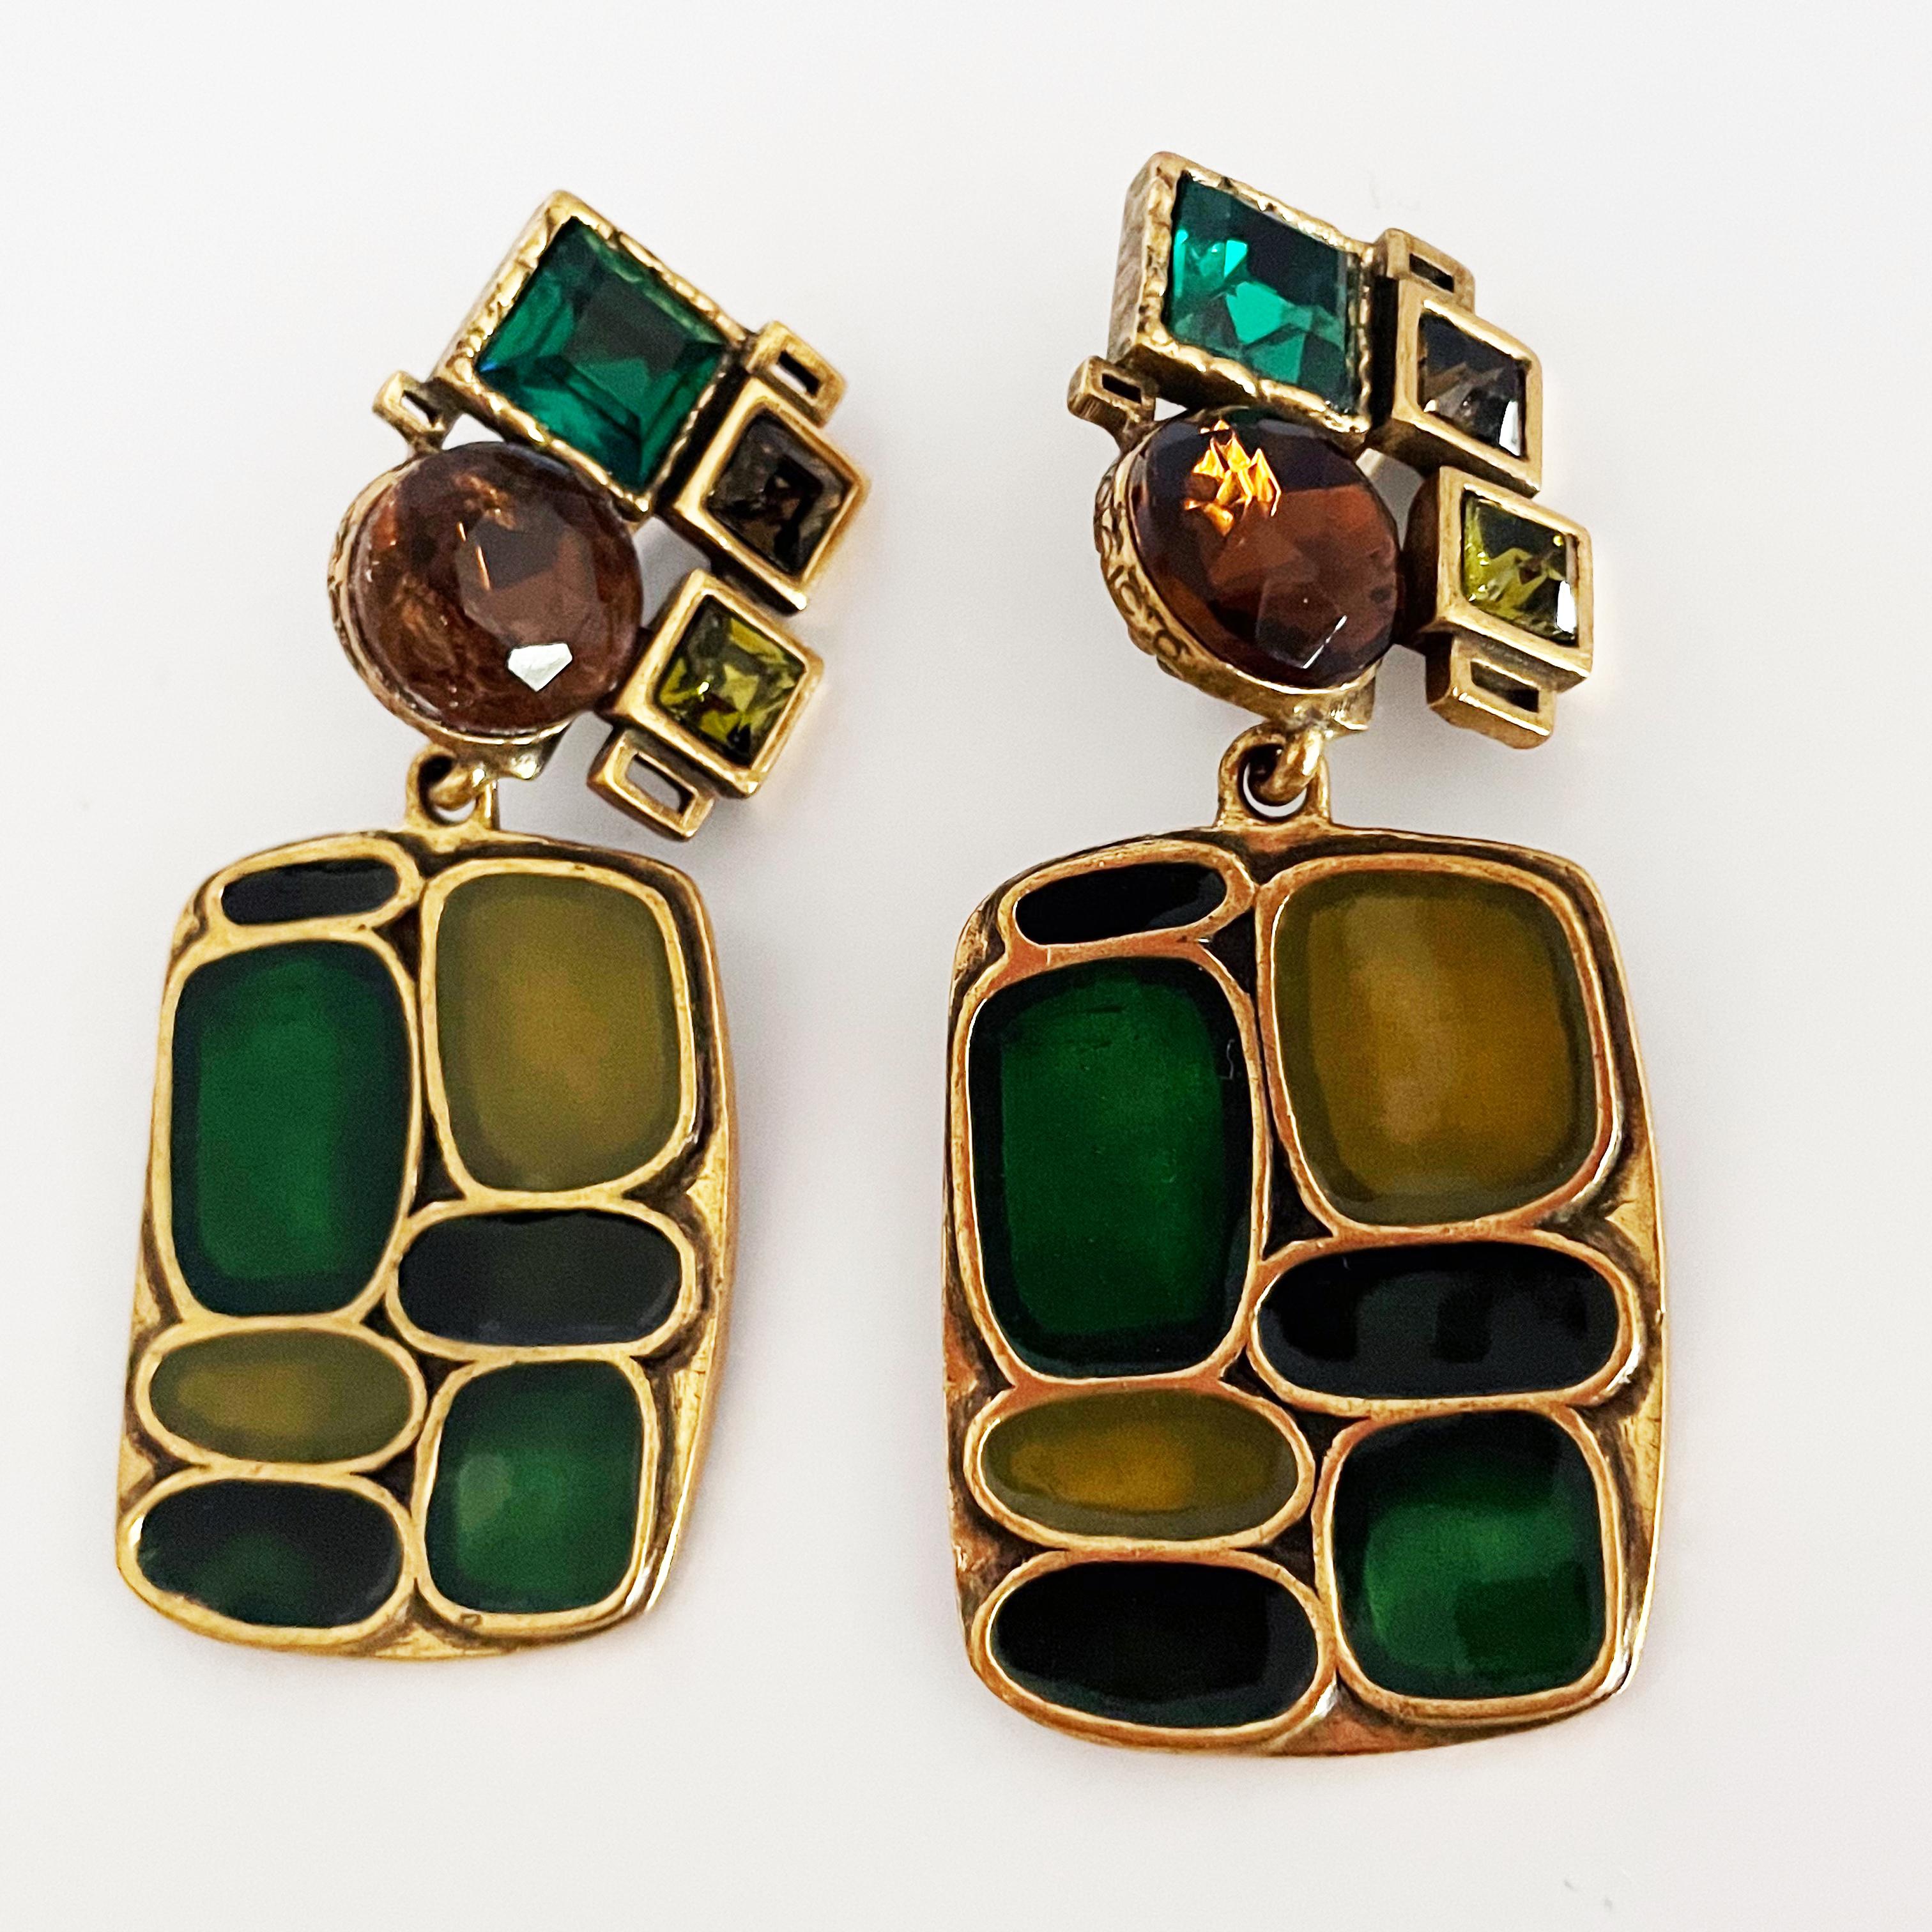 Boucles d'oreilles pendantes modernistes Oscar de la Renta, probablement réalisées dans les années 1980.  Réalisées en métal couleur laiton, elles présentent les caractéristiques suivantes  des formes modernistes et des cristaux dans des tons de